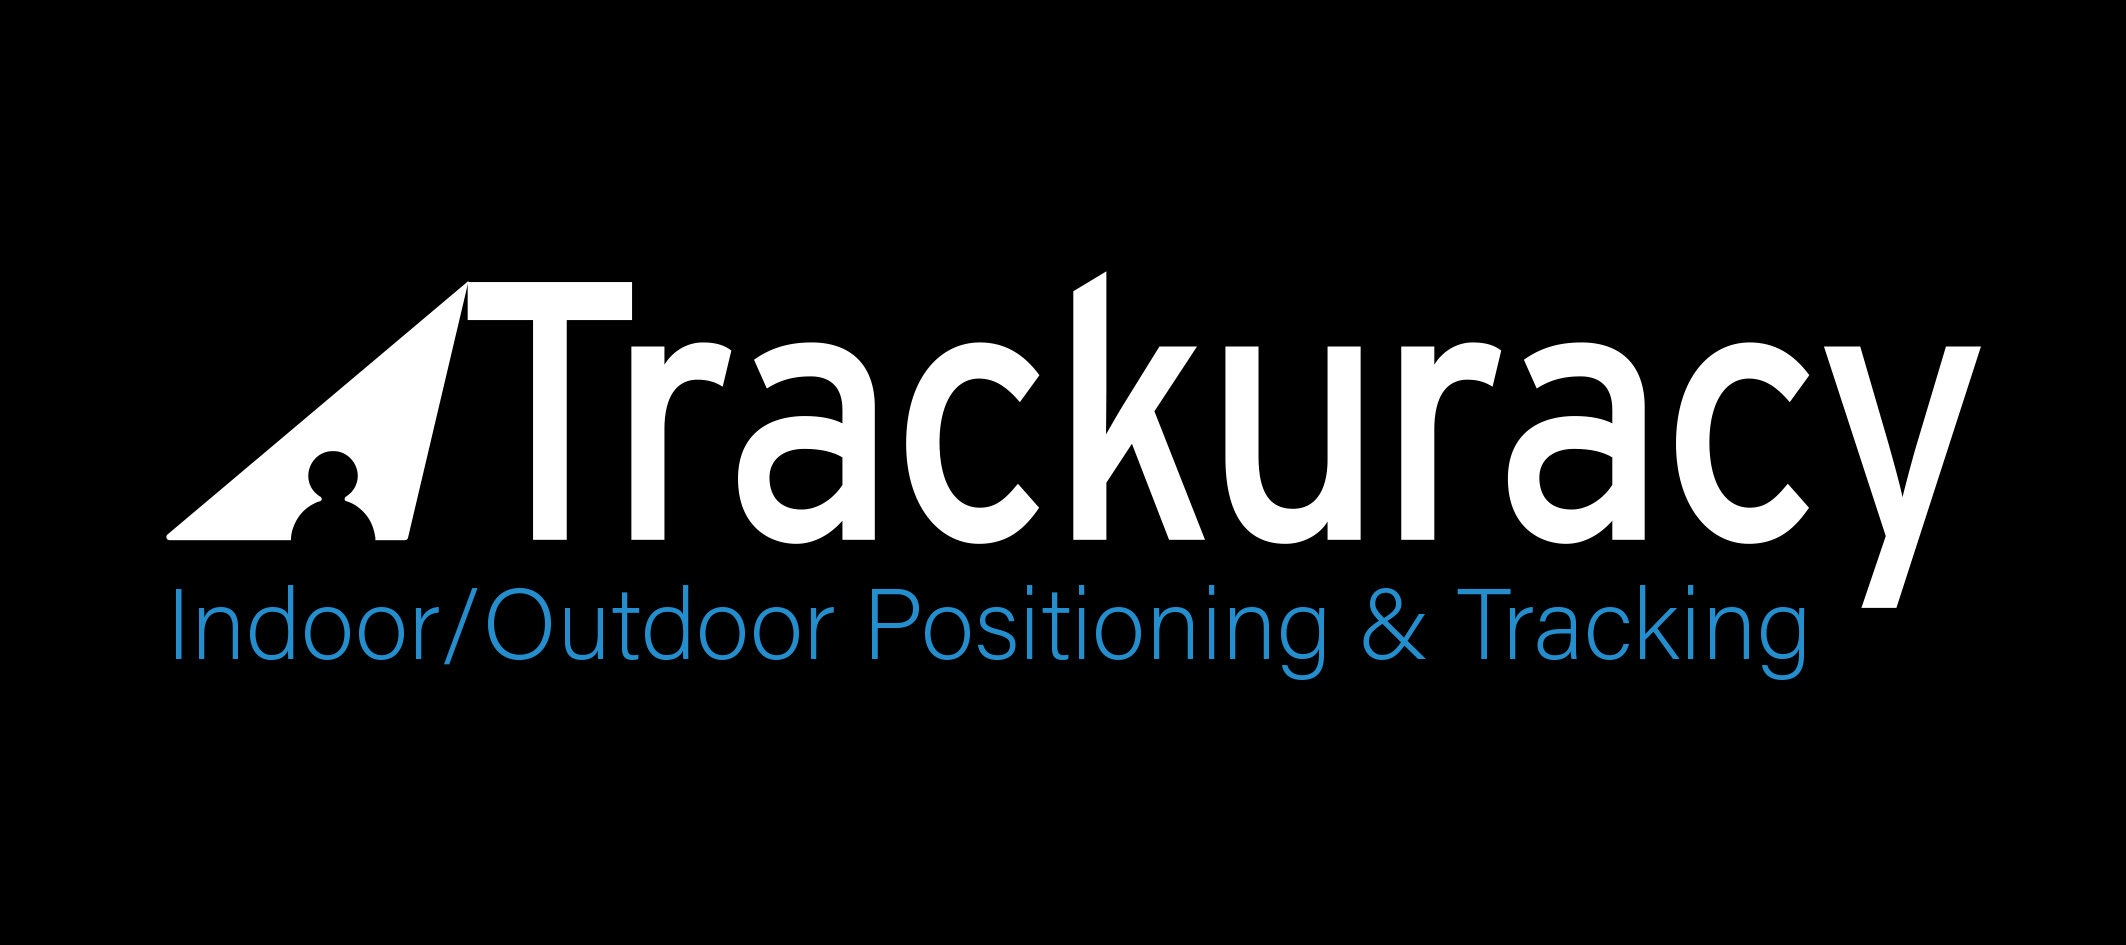 Trackuracy logo